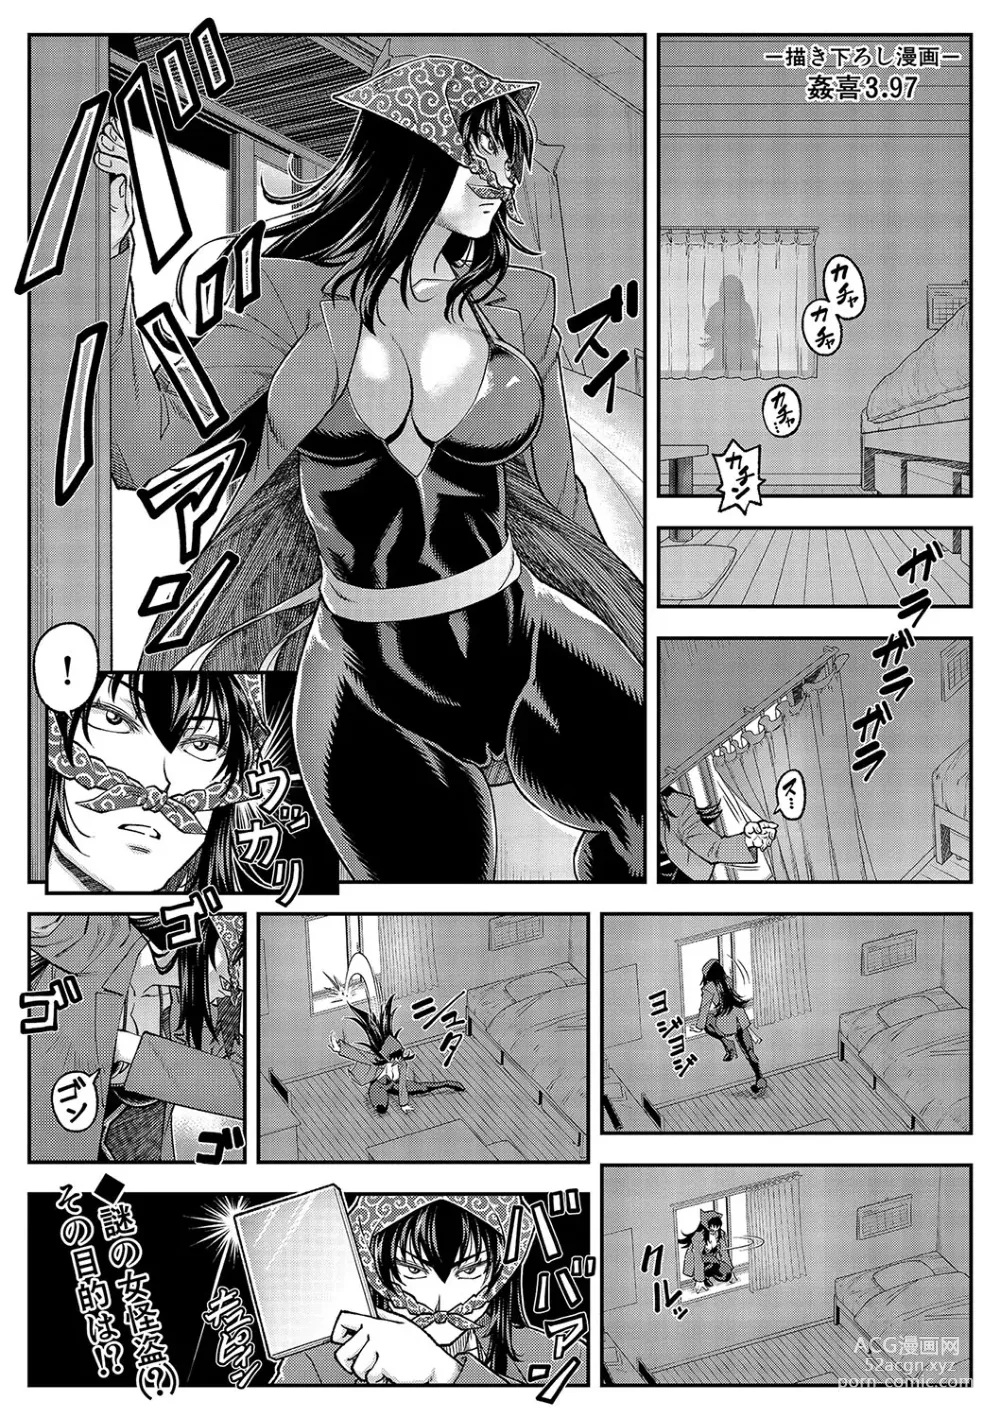 Page 185 of manga Yareba Yaru Hodo Suki ni Naru